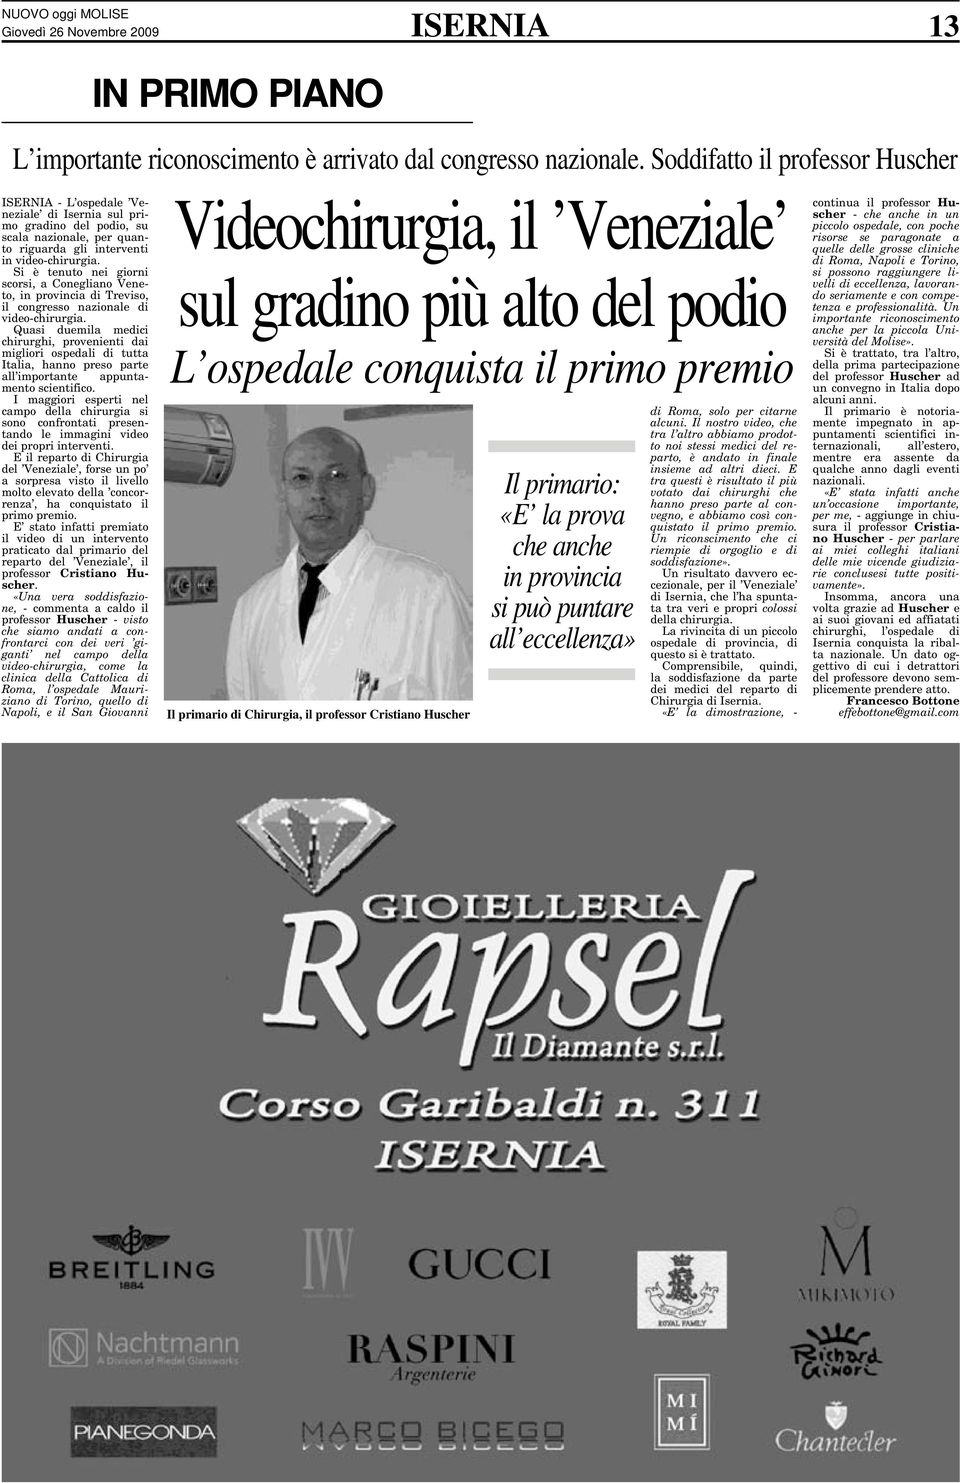 Si è tenuto nei giorni scorsi, a Conegliano Veneto, in provincia di Treviso, il congresso nazionale di video-chirurgia.